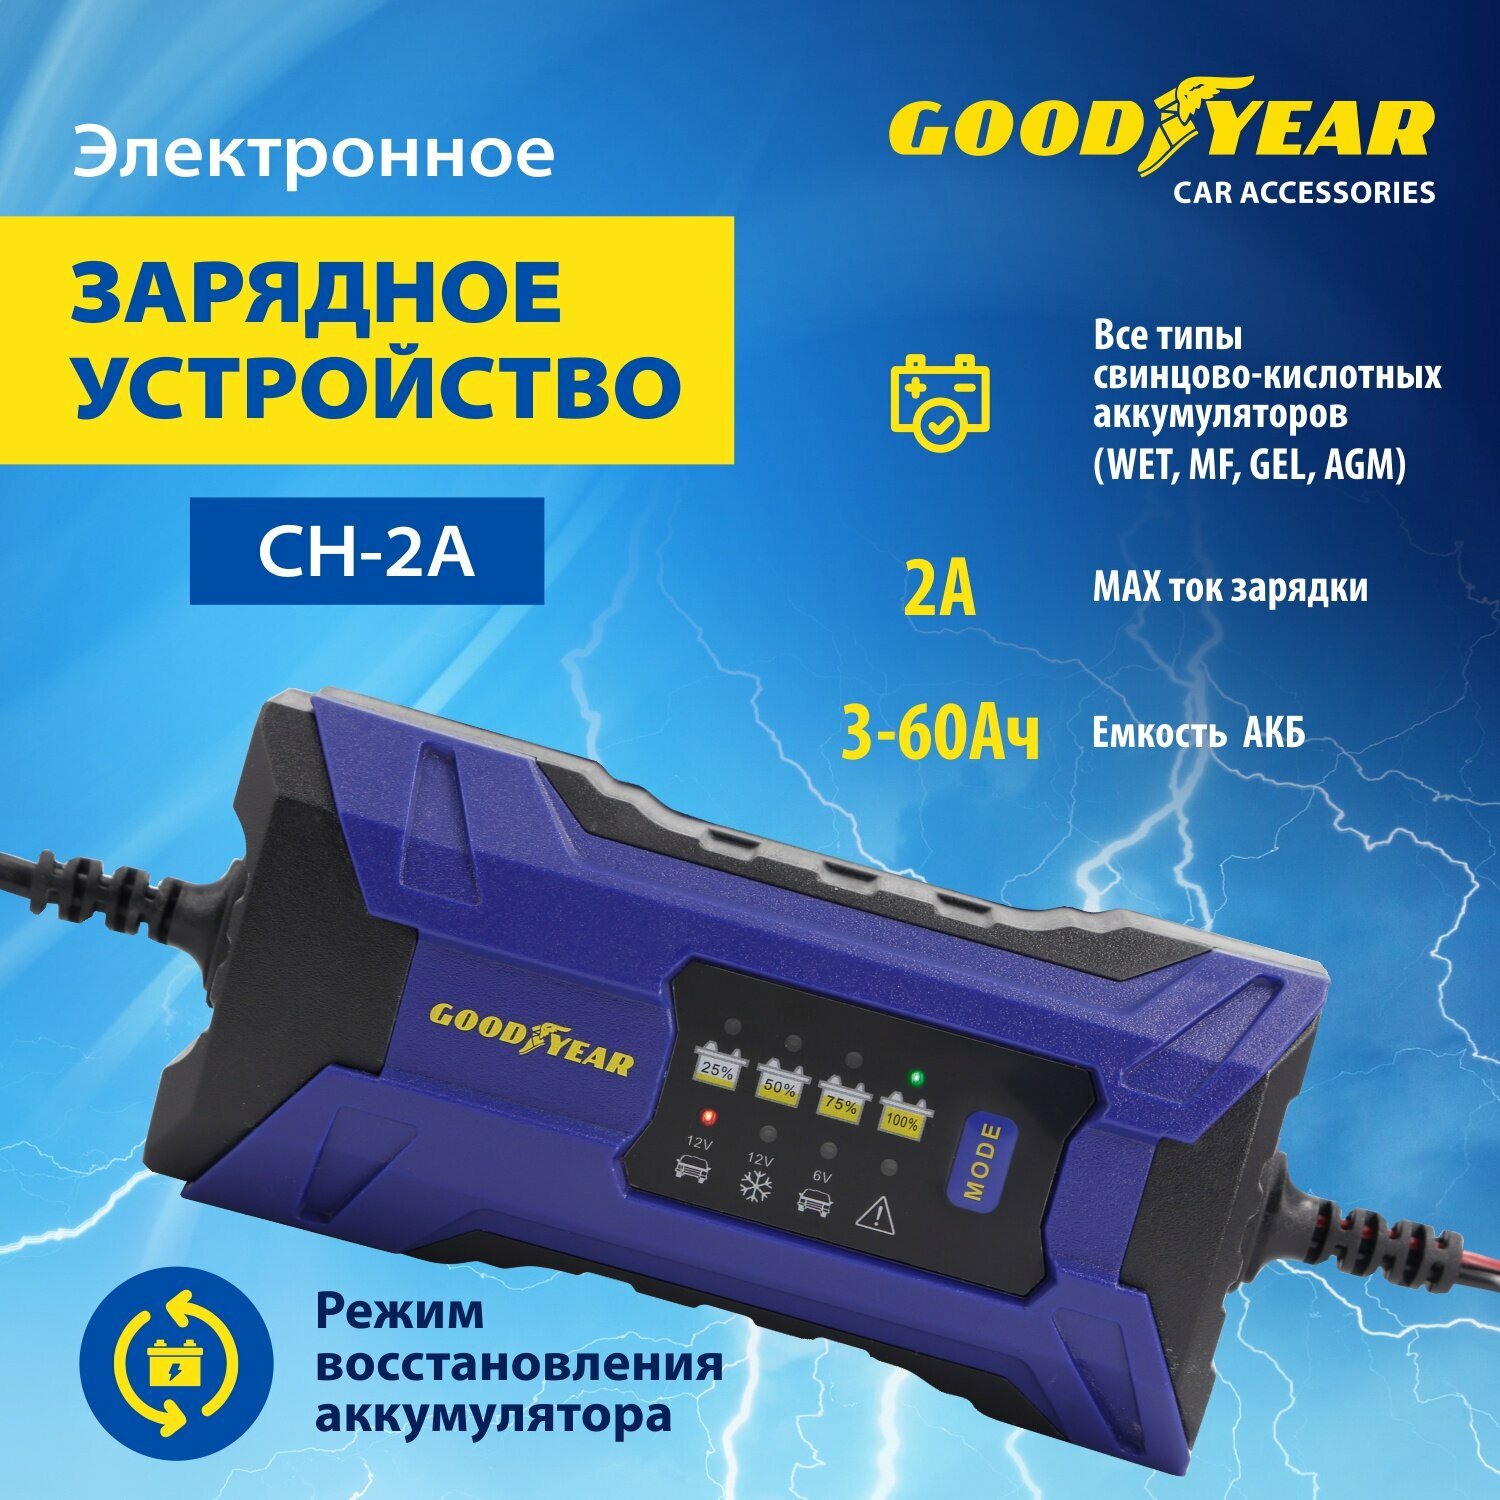 Электронное зарядное устройство Goodyear для свинцово-кислотных аккумуляторов CH-2A